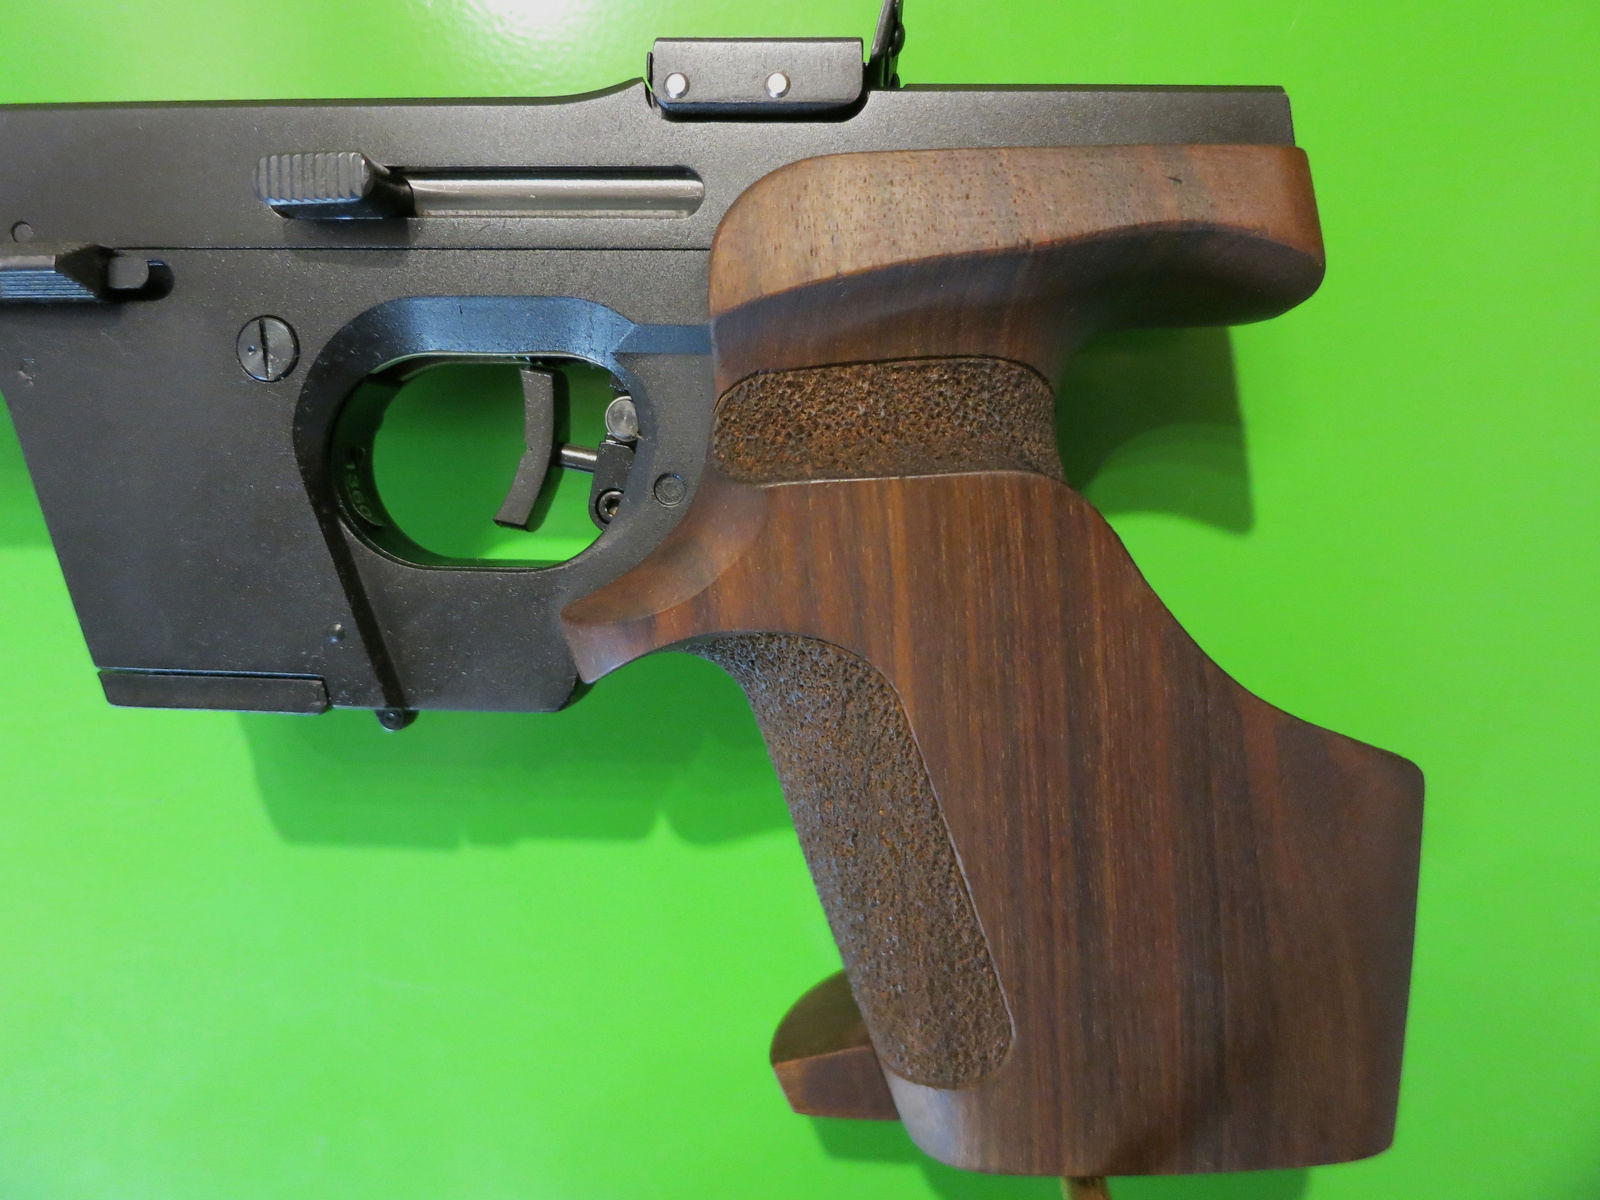 Sport-Pistole Walther GSP Kaliber .22lr, Sport-Griff, weltweit beliebteste Sportpistole, super Zustand    #98